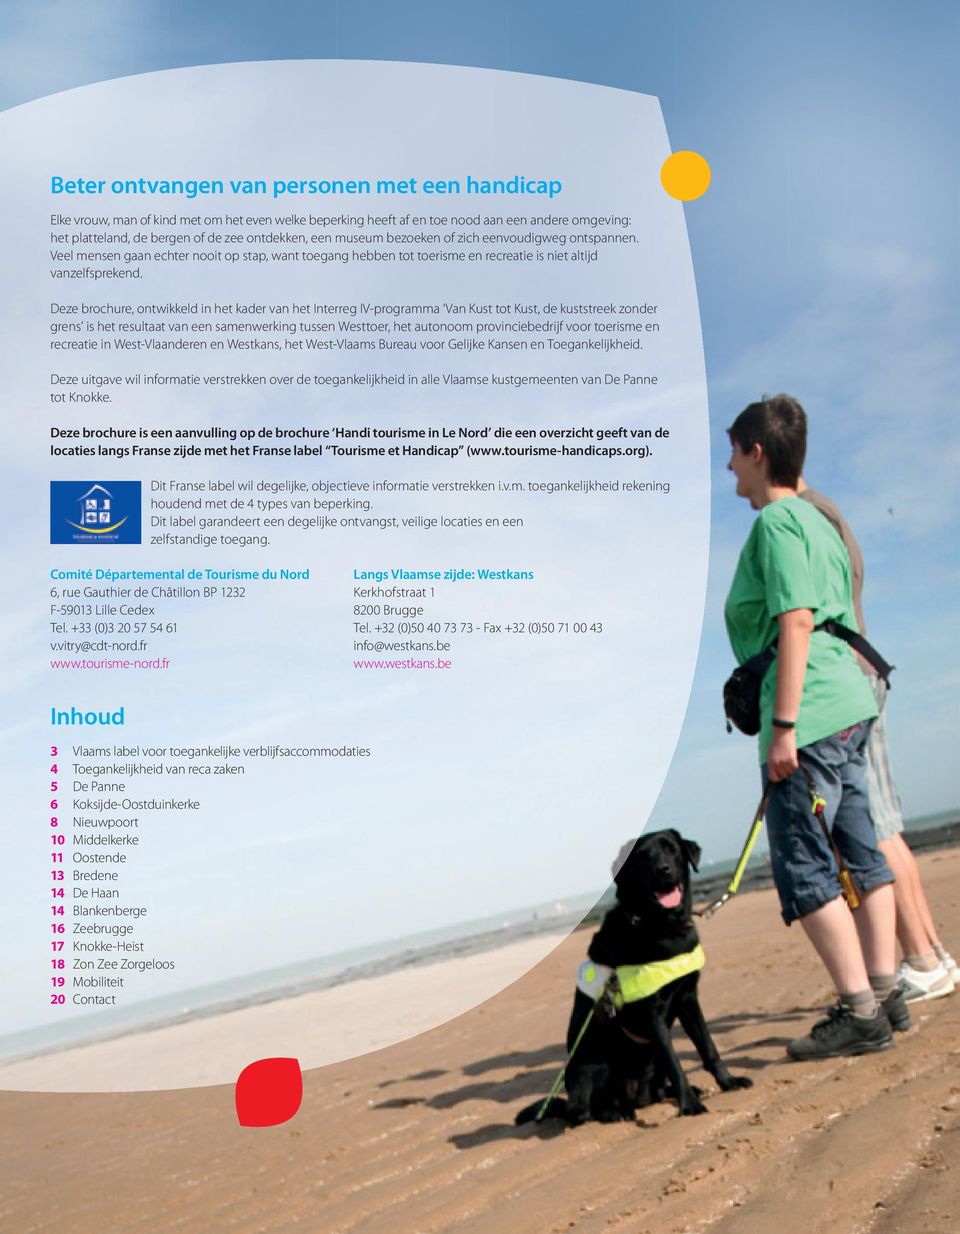 Deze brochure, ontwikkeld in het kader van het Interreg IV-programma Van Kust tot Kust, de kuststreek zonder grens is het resultaat van een samenwerking tussen Westtoer, het autonoom provinciebedrijf